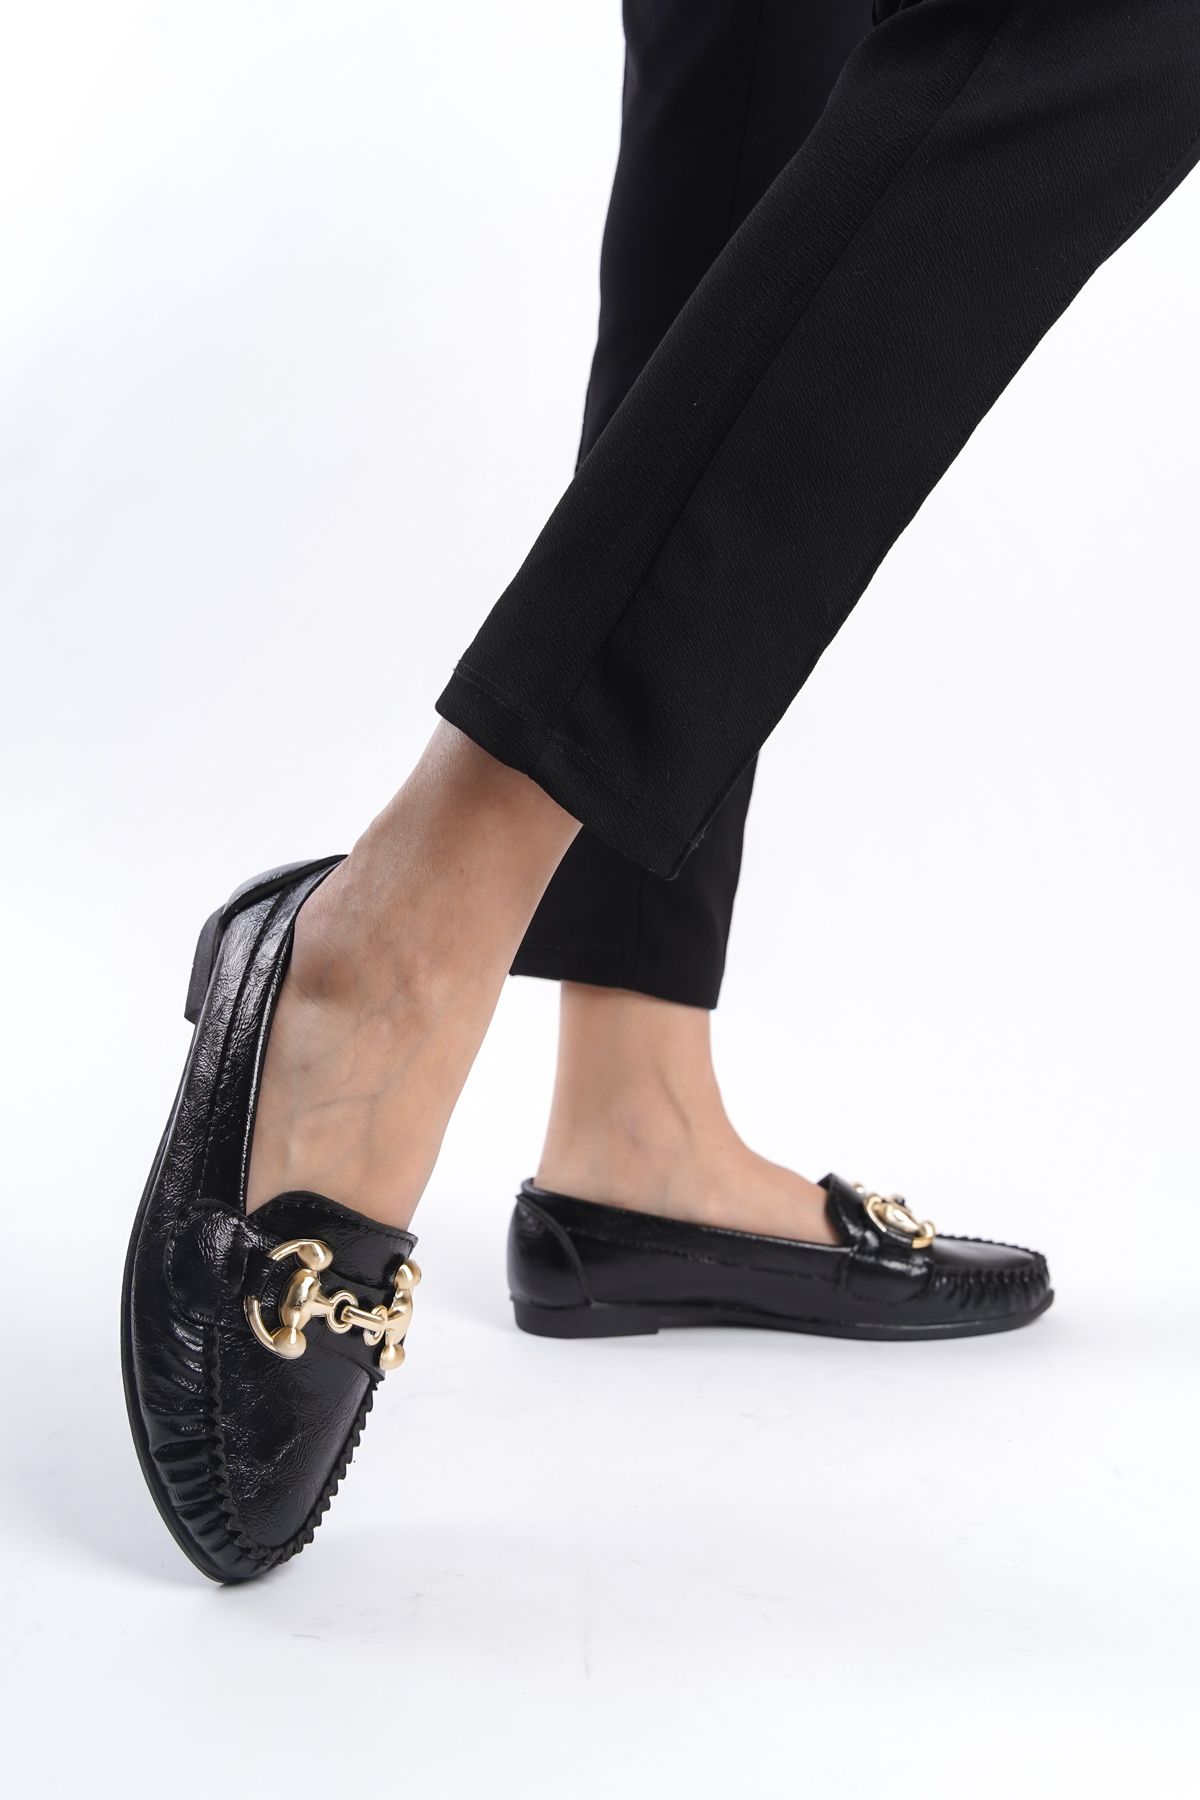 eformoda by emre yılmaz Siyah Kadın Günlük Rahat Tokalı Casual Klasik Ayakkabı Babet LRS03